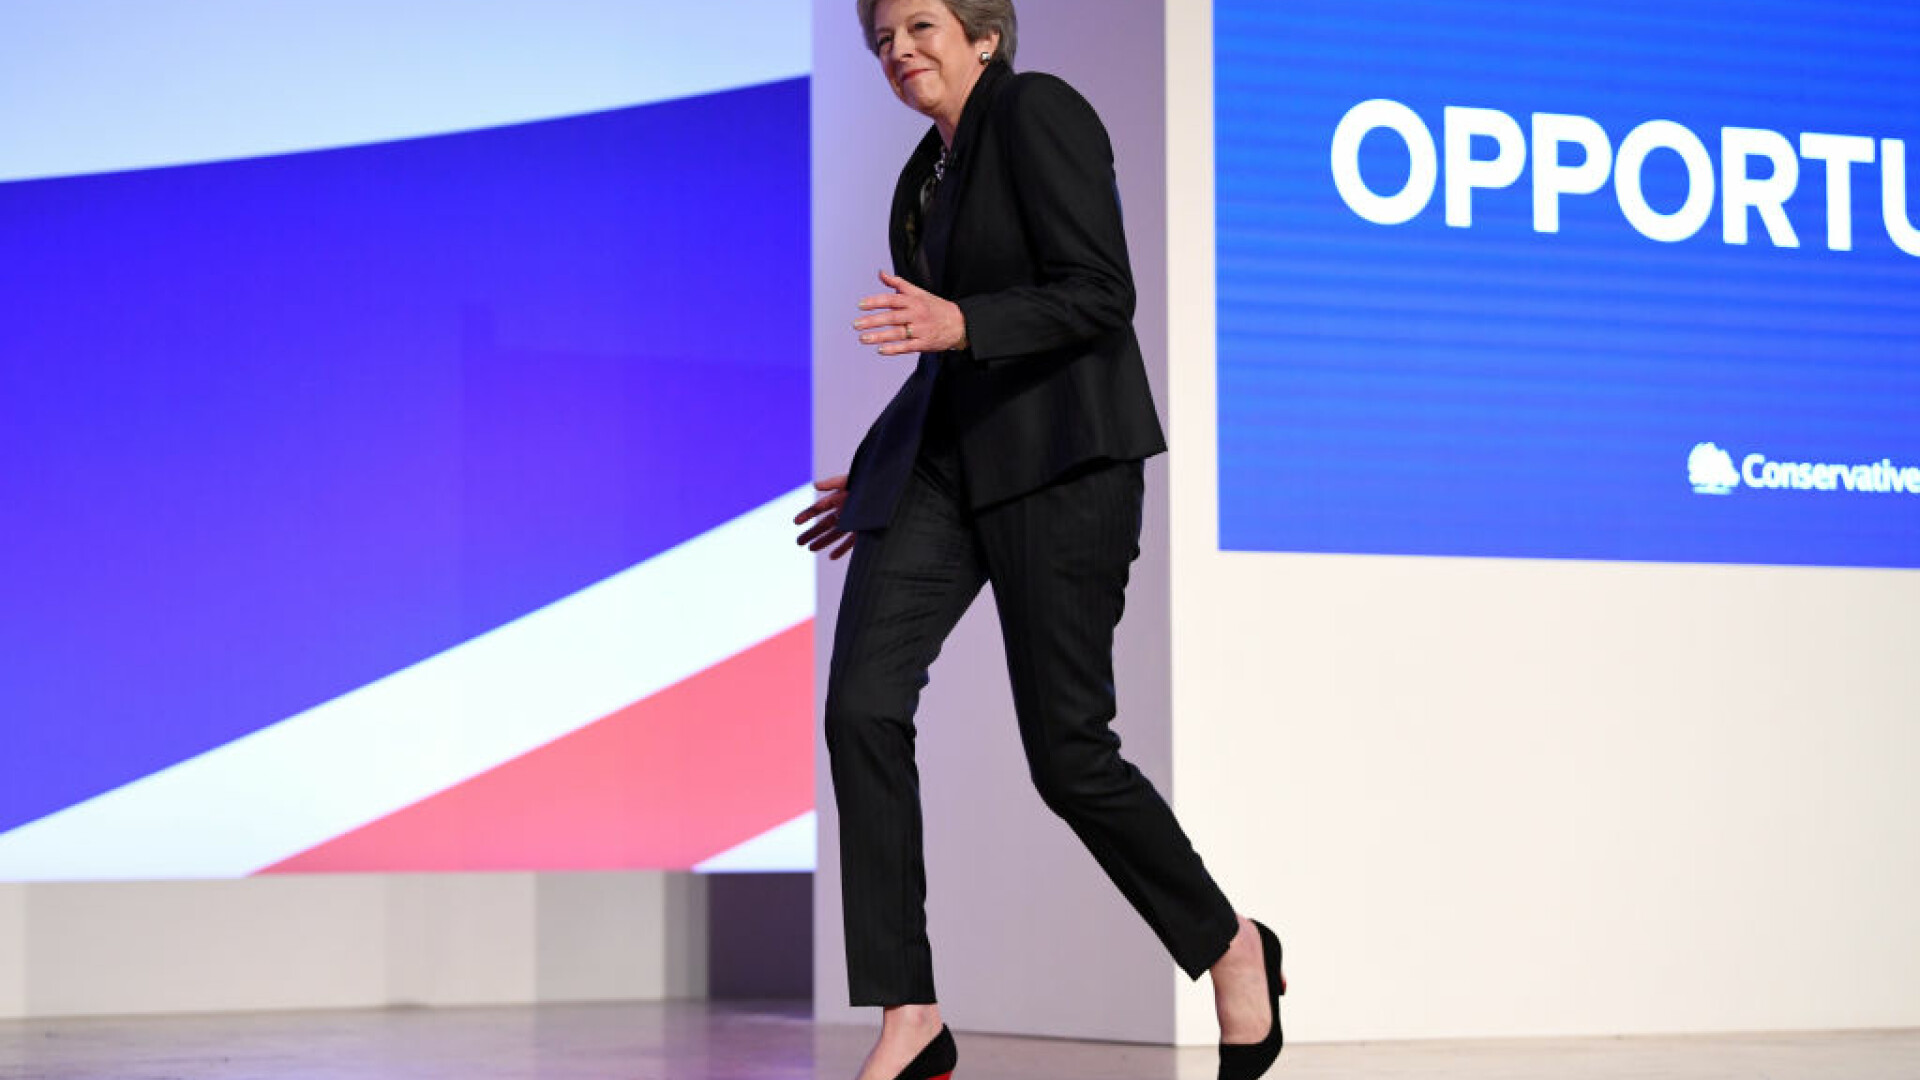 Premierul britanic Theresa May la o conferință de presă